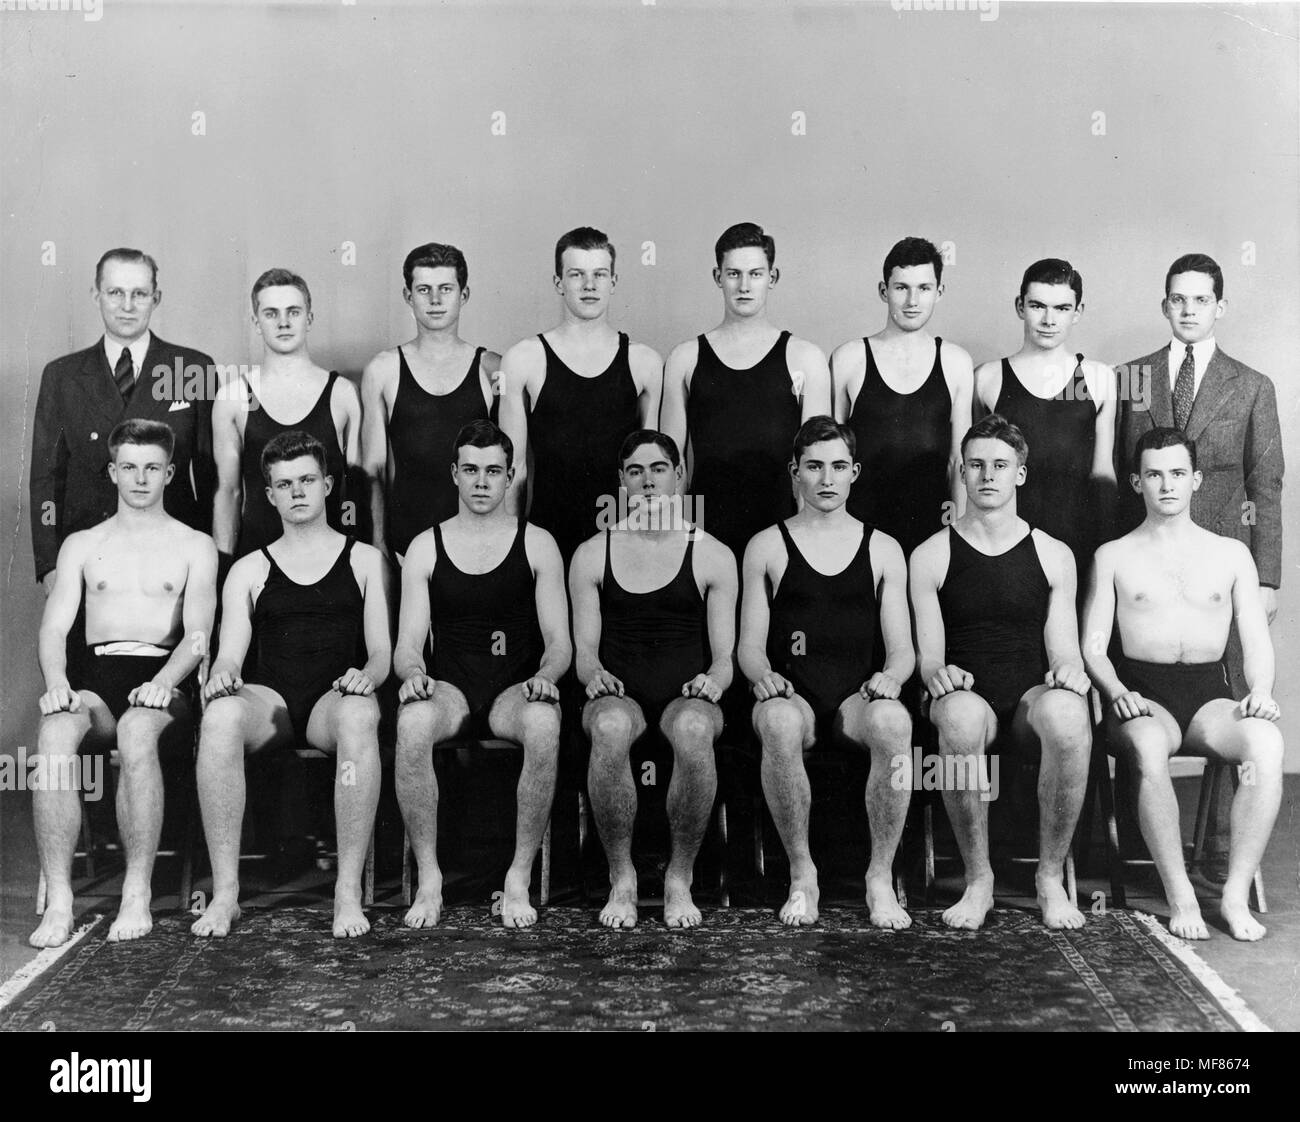 PC16 c.1936-37 Harvard nadar Foto de equipo, c. 1936-37. John F. Kennedy es el tercero desde la izquierda en la fila de atrás. Fotografía en el John F. Kennedy Presidential Library and Museum, Boston. Foto de stock